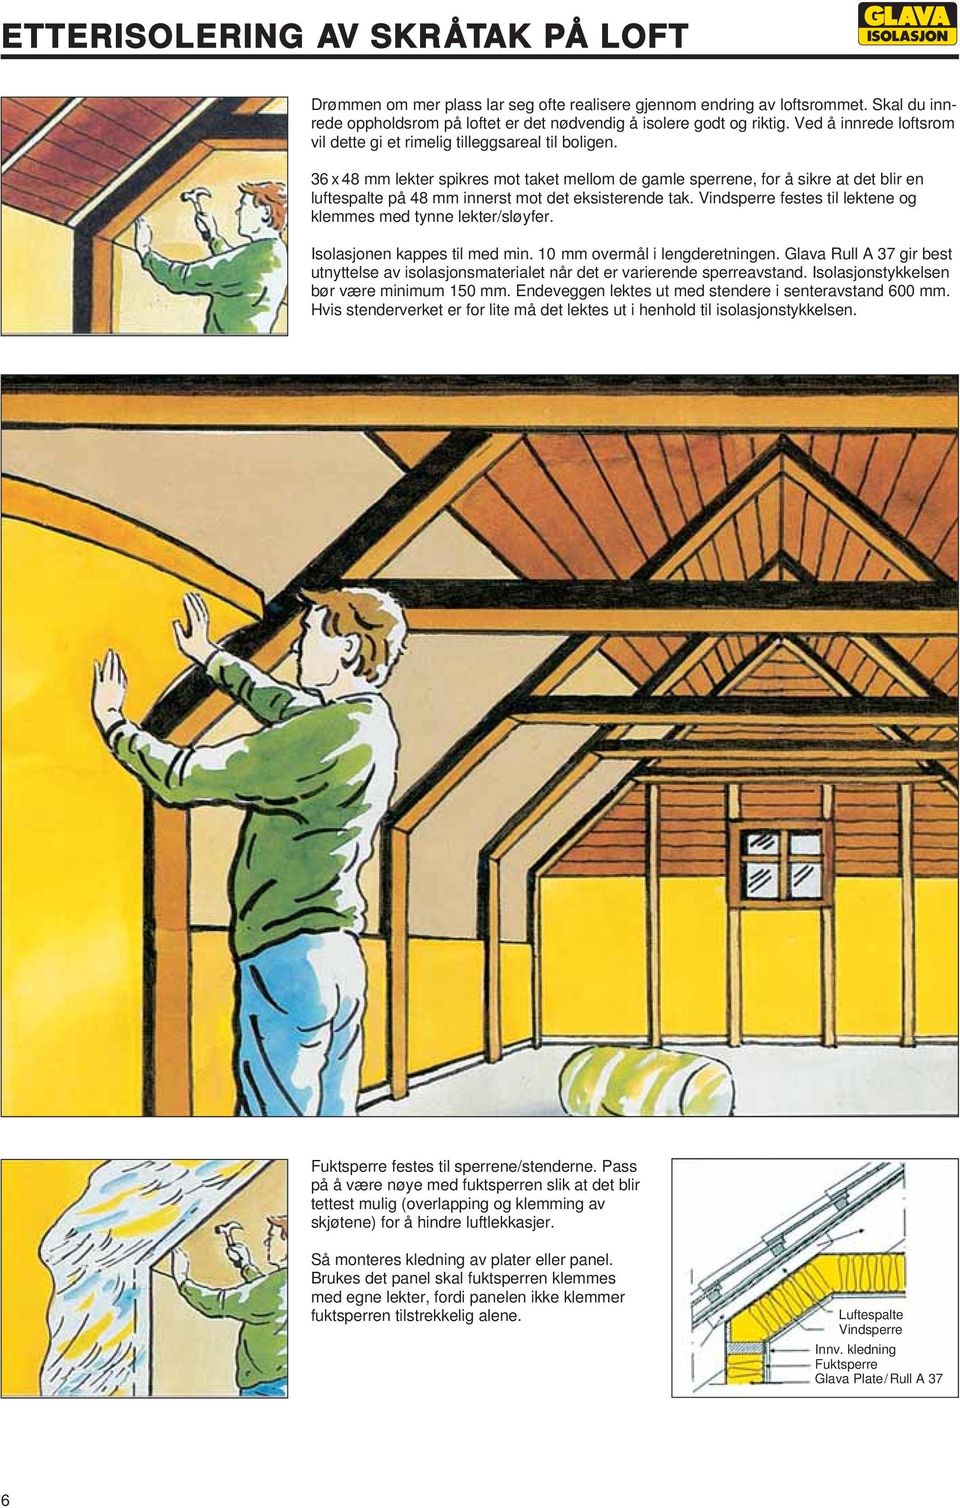 36 x 48 mm lekter spikres mot taket mellom de gamle sperrene, for å sikre at det blir en luftespalte på 48 mm innerst mot det eksisterende tak.